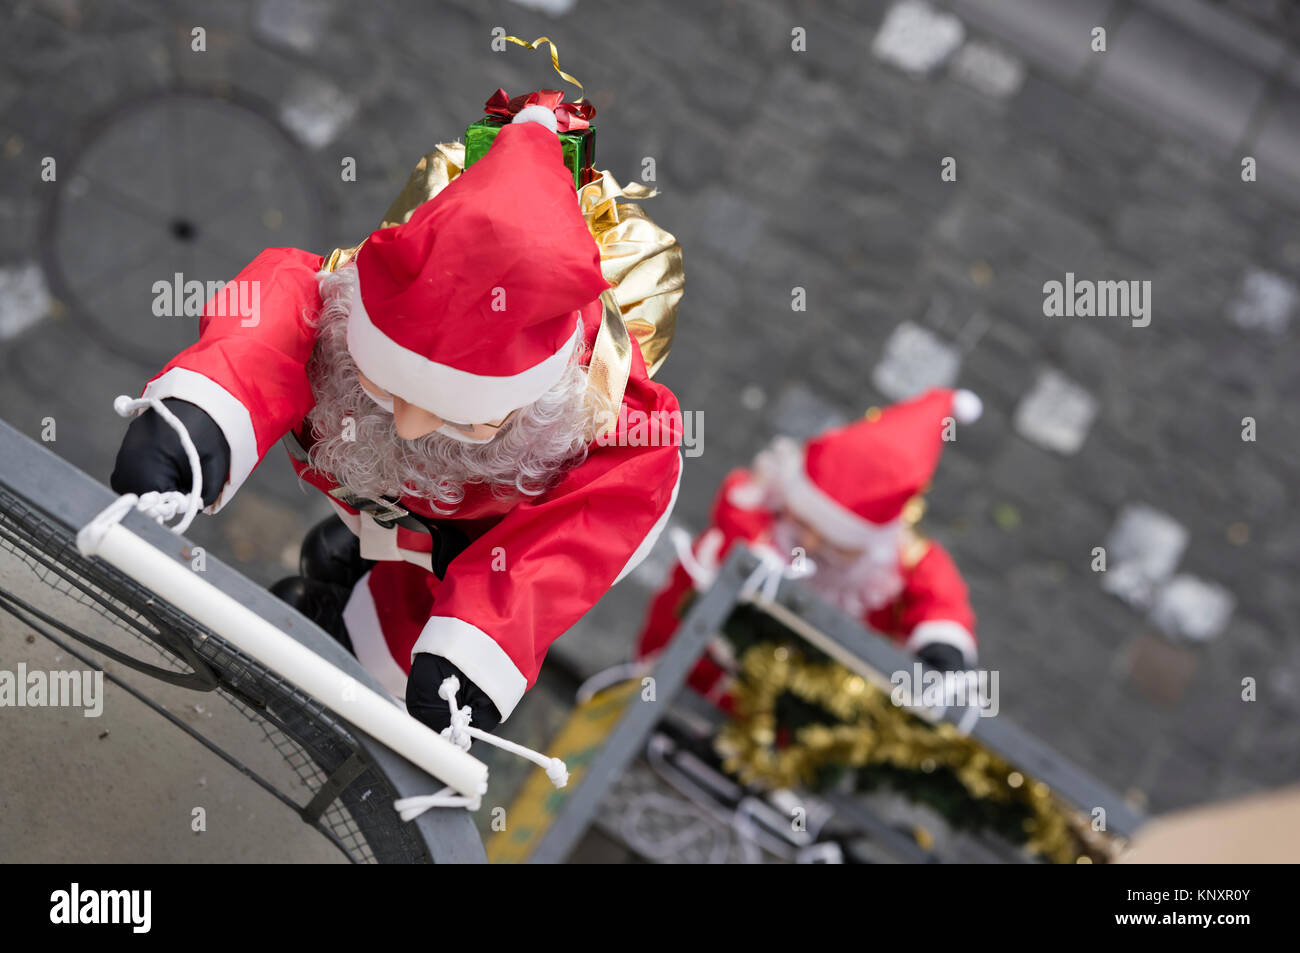 Luzern, Schweiz - 3 Dec 2017: als Weihnachtsschmuck, ein Seil team von  Santa Claus Marionetten klettert die Fassade eines Hauses in Luzern,  Schweiz Stockfotografie - Alamy